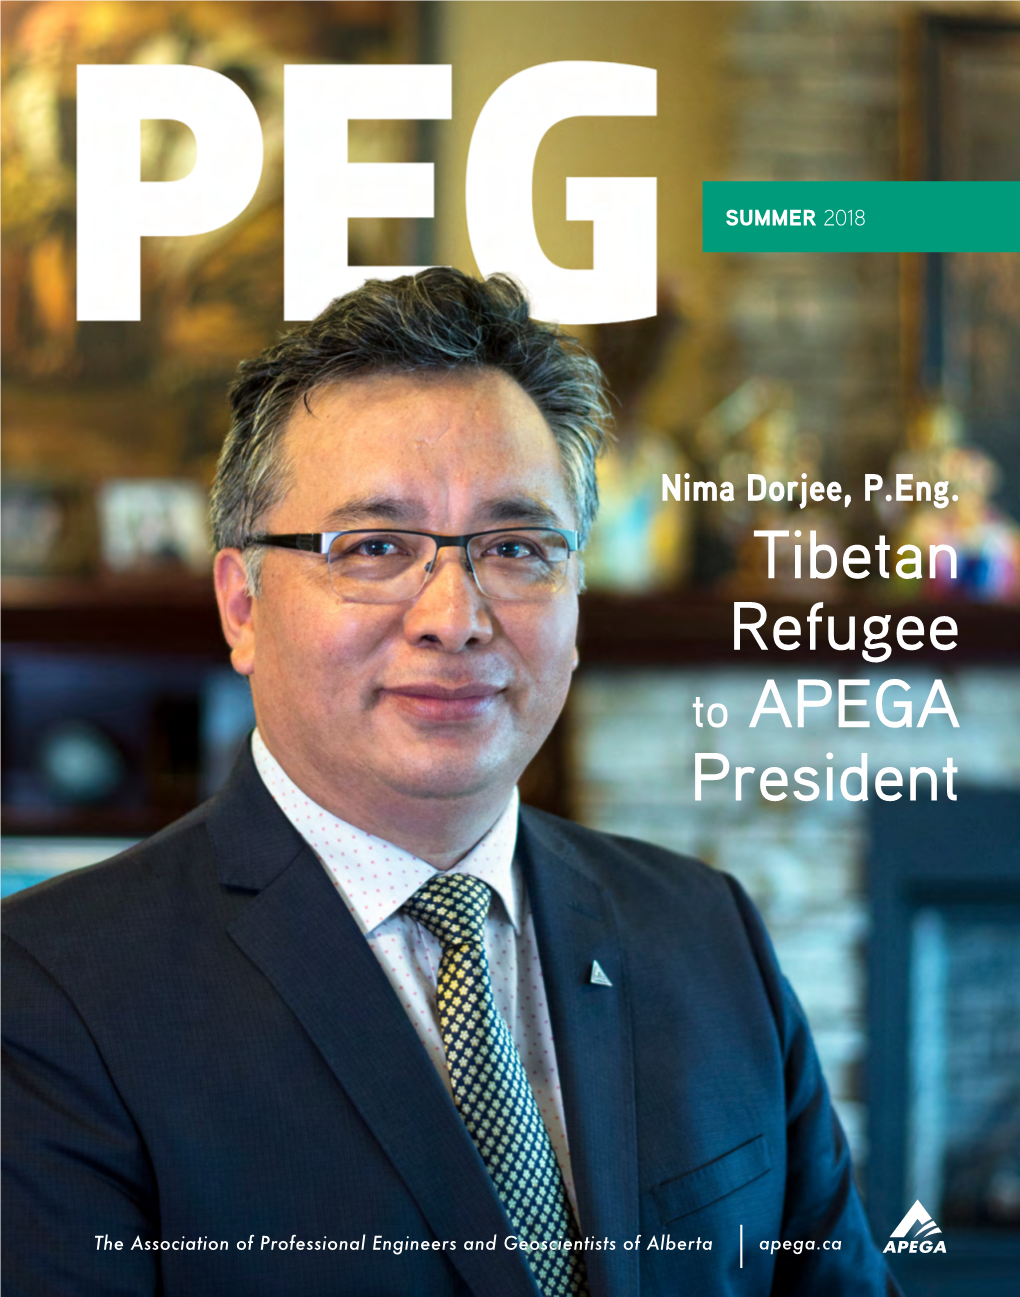 PEG Magazine